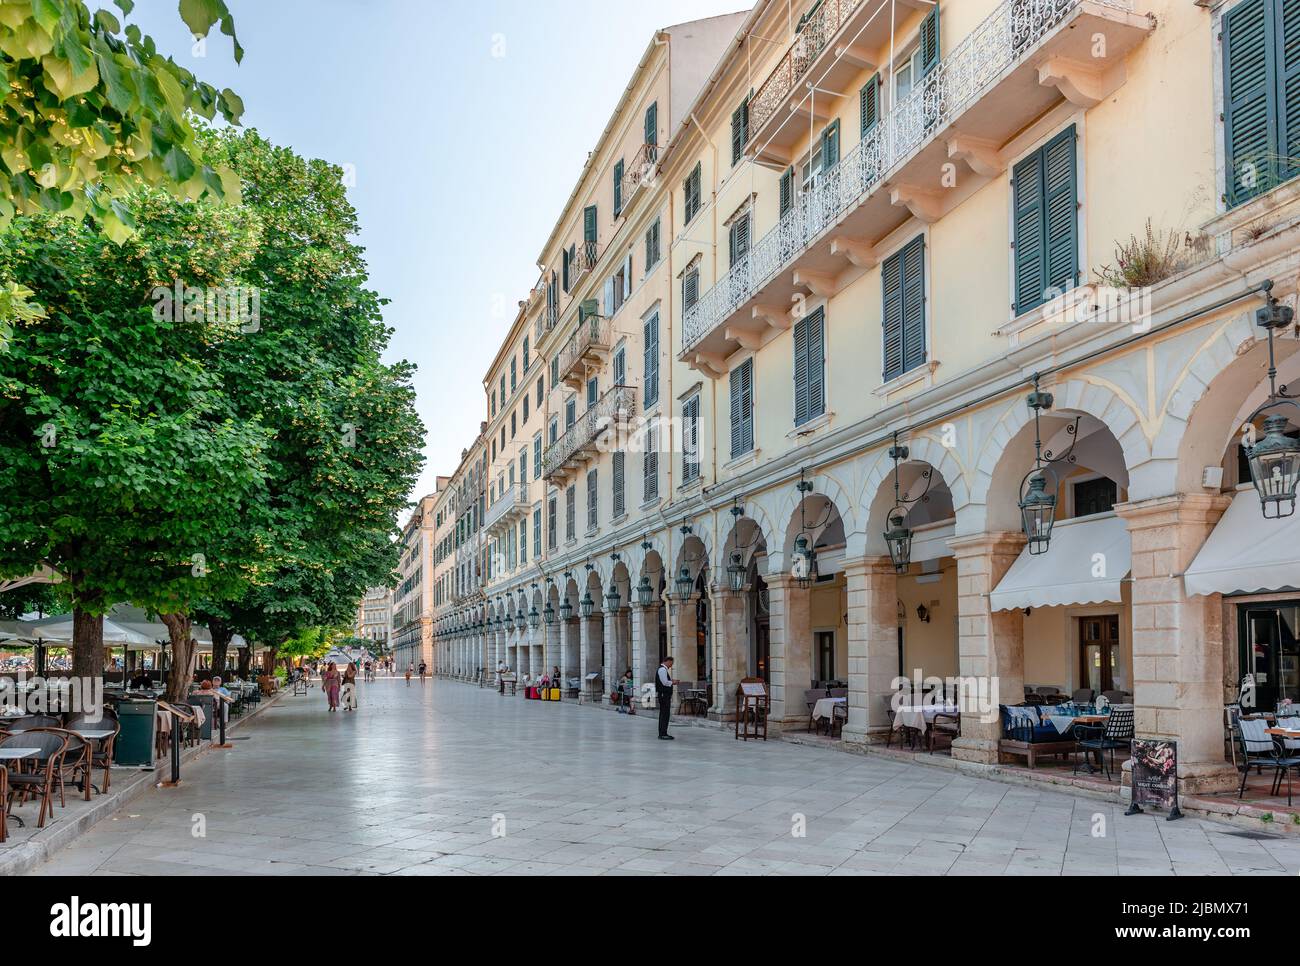 Liston, una strada pedonale con terrazze porticate e caffè alla moda nel bordo occidentale di Piazza Spianada nel centro di Corfù, Grecia. Foto Stock